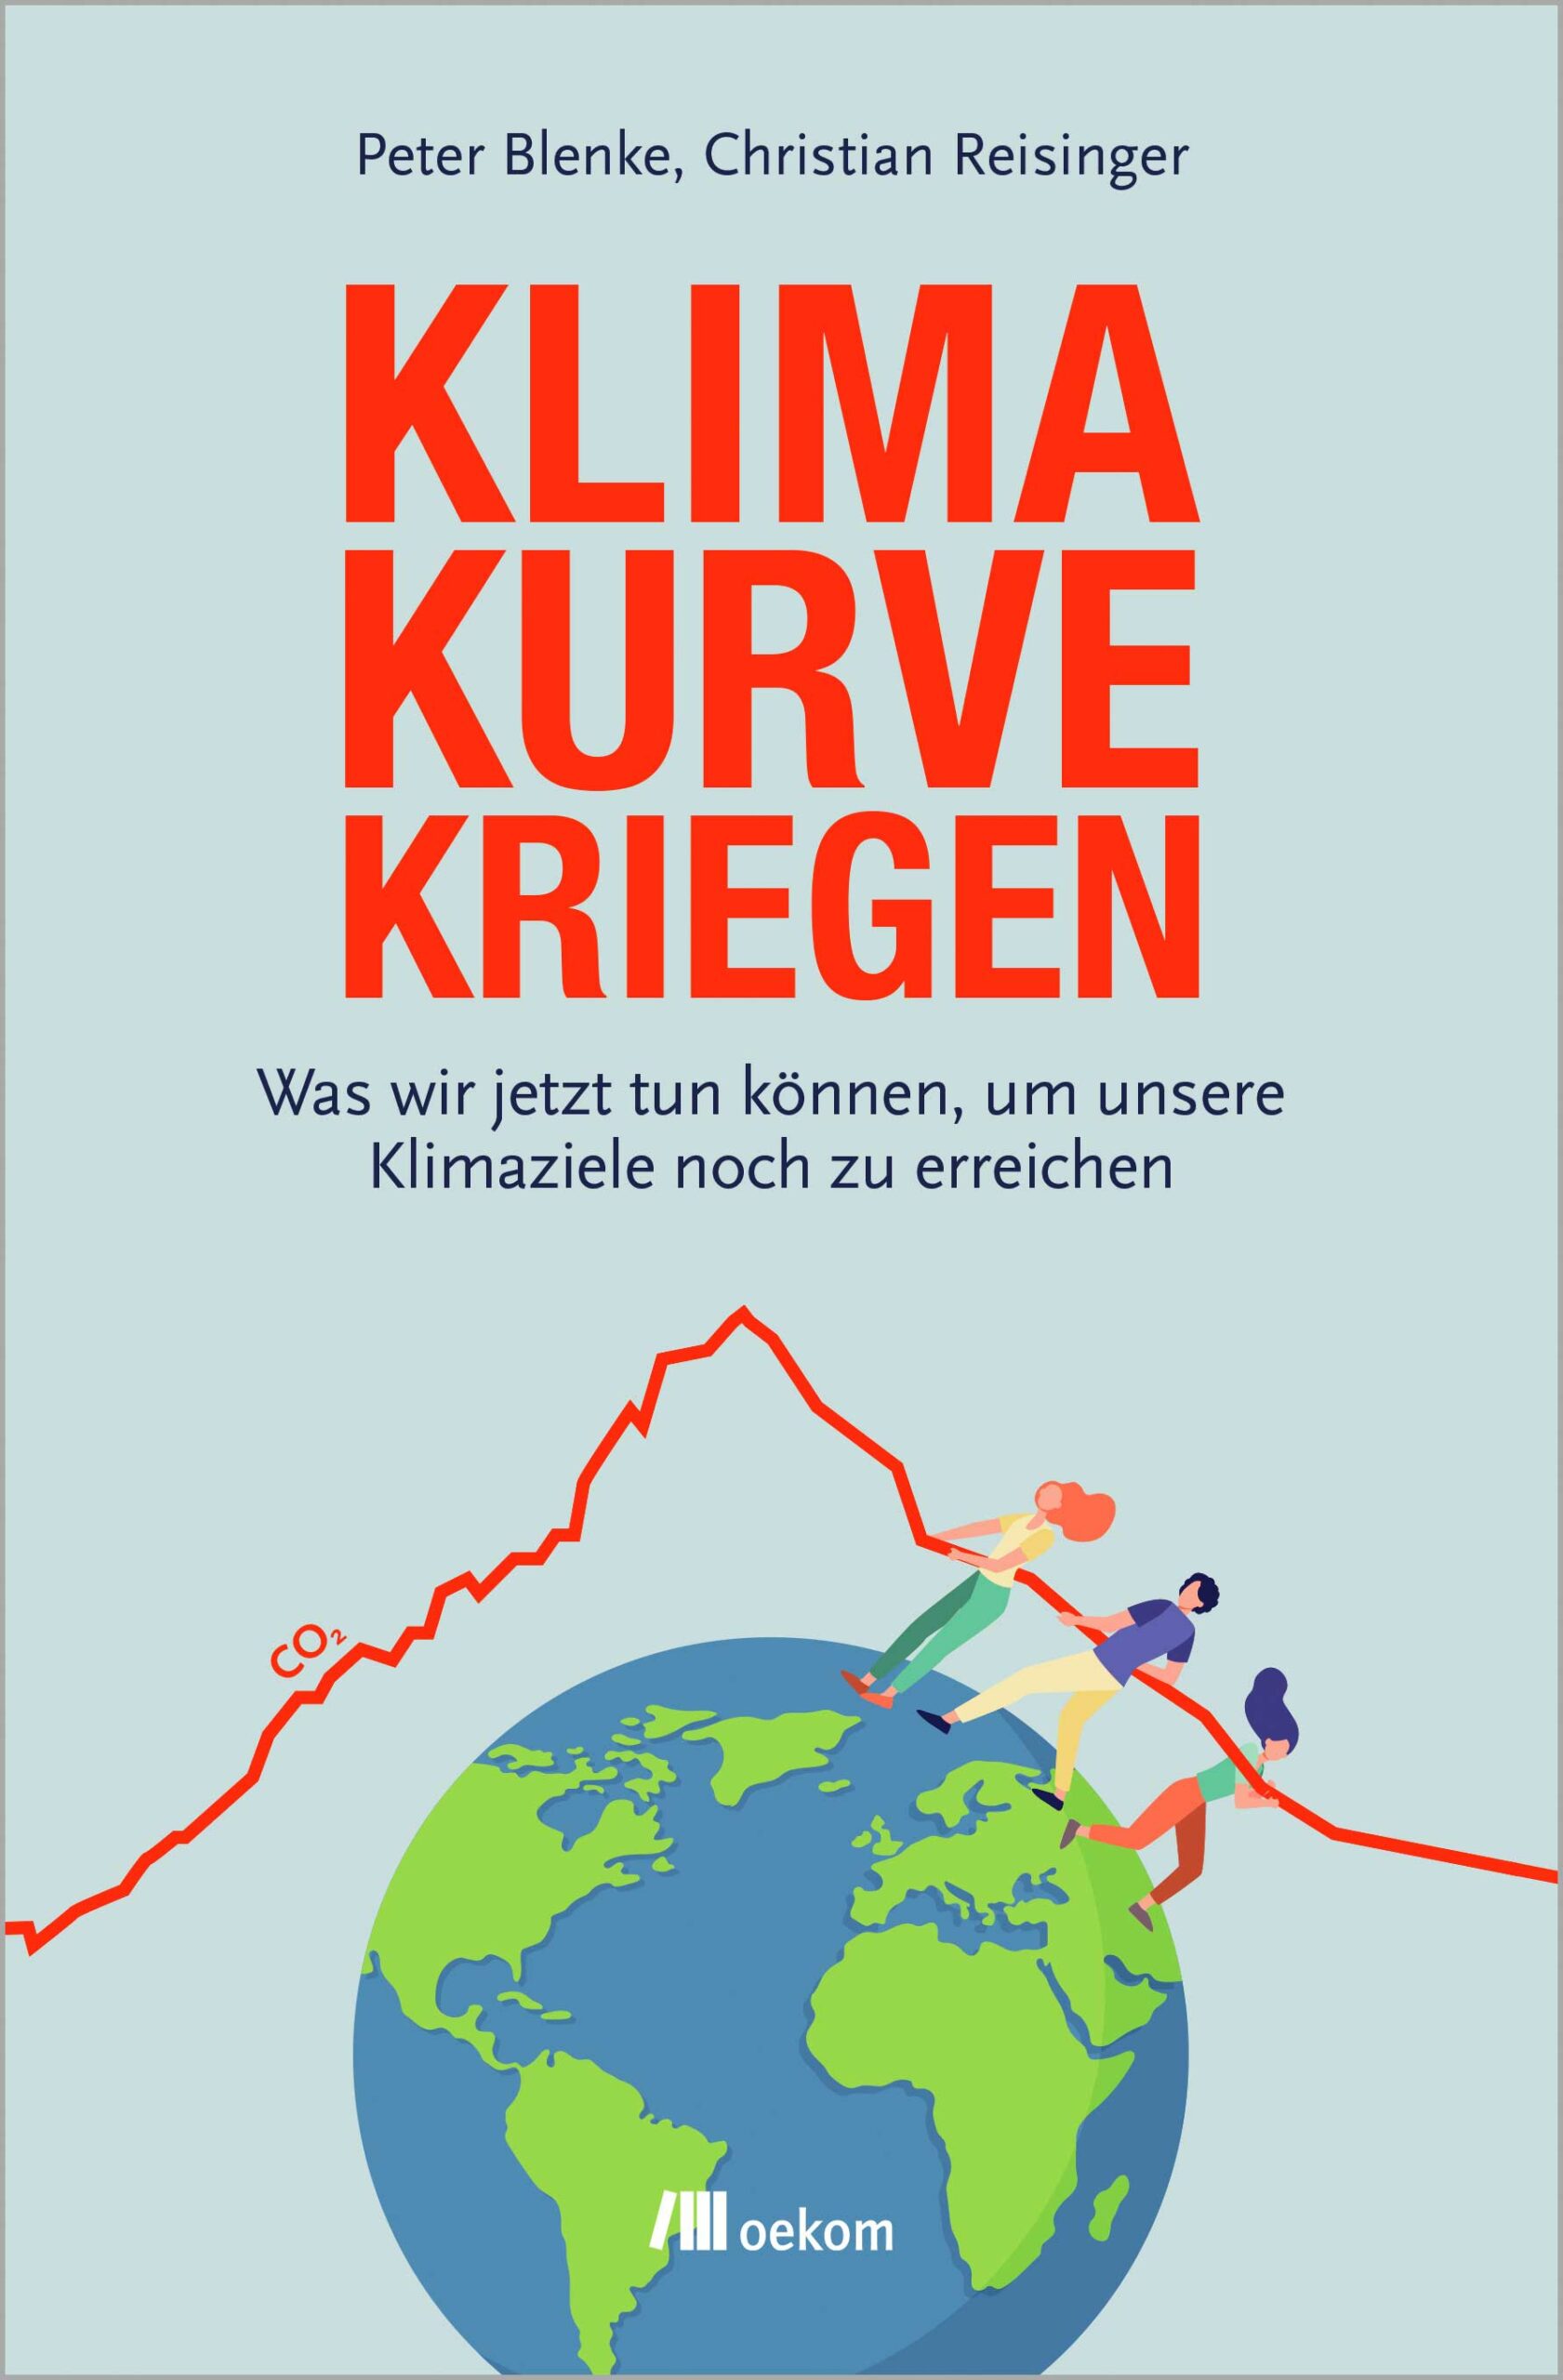 Buchcover des Klimaschutz-Ratgebers "Klimakurve kriegen"